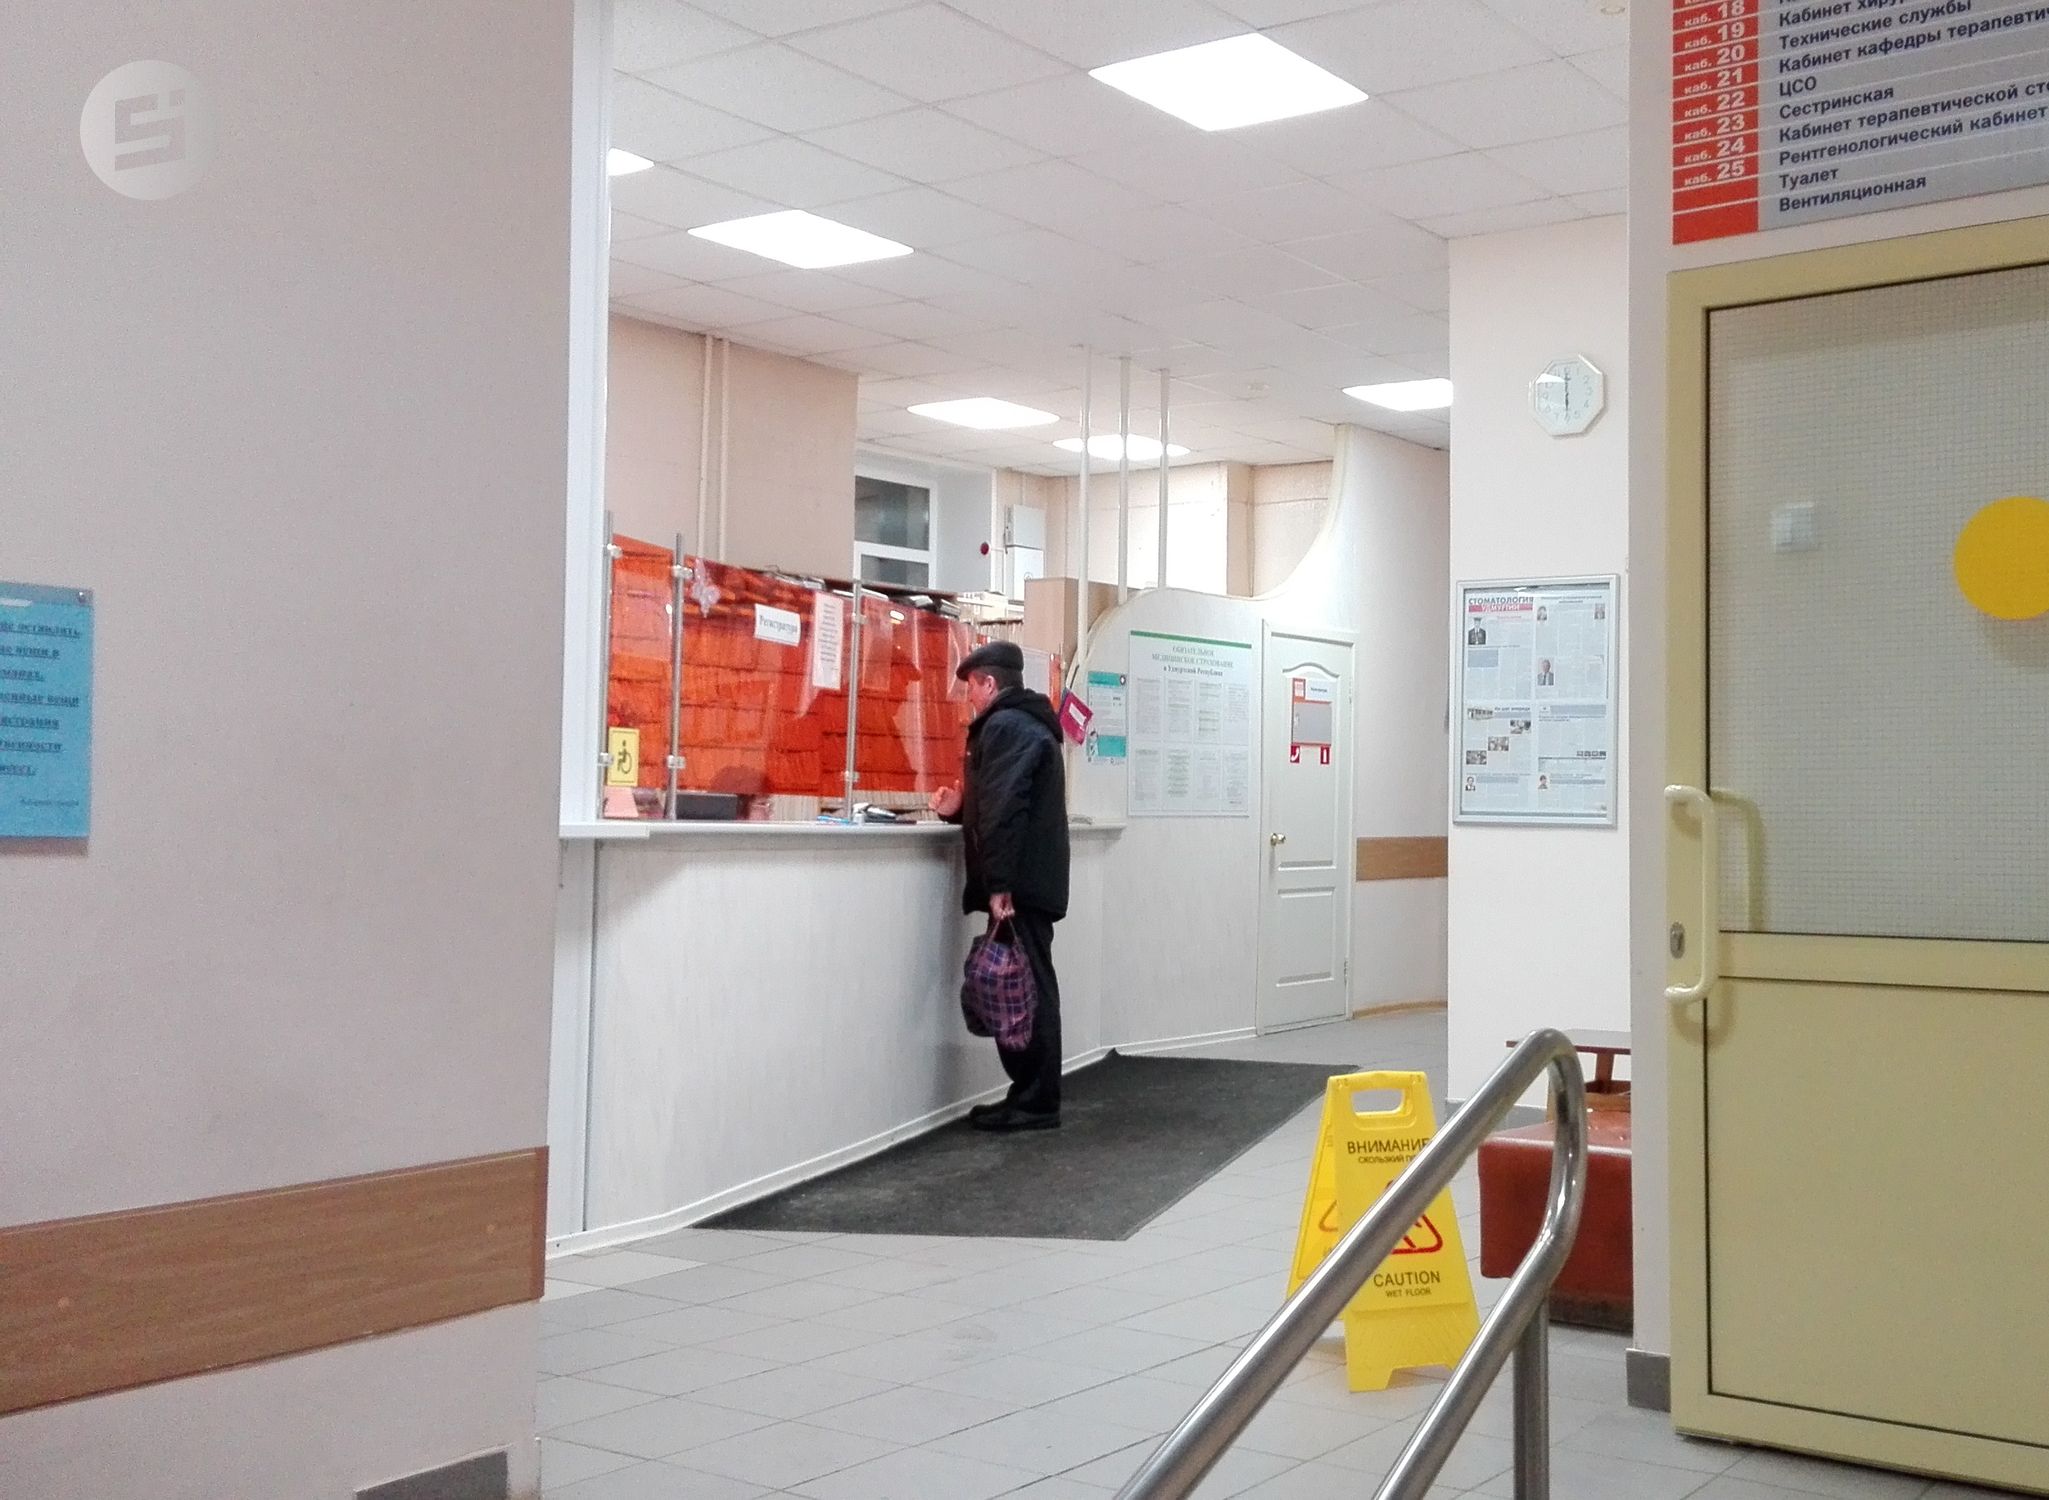 

Жителям Удмуртии рассказали о режиме работе поликлиник и стоматологий в новогодние праздники

